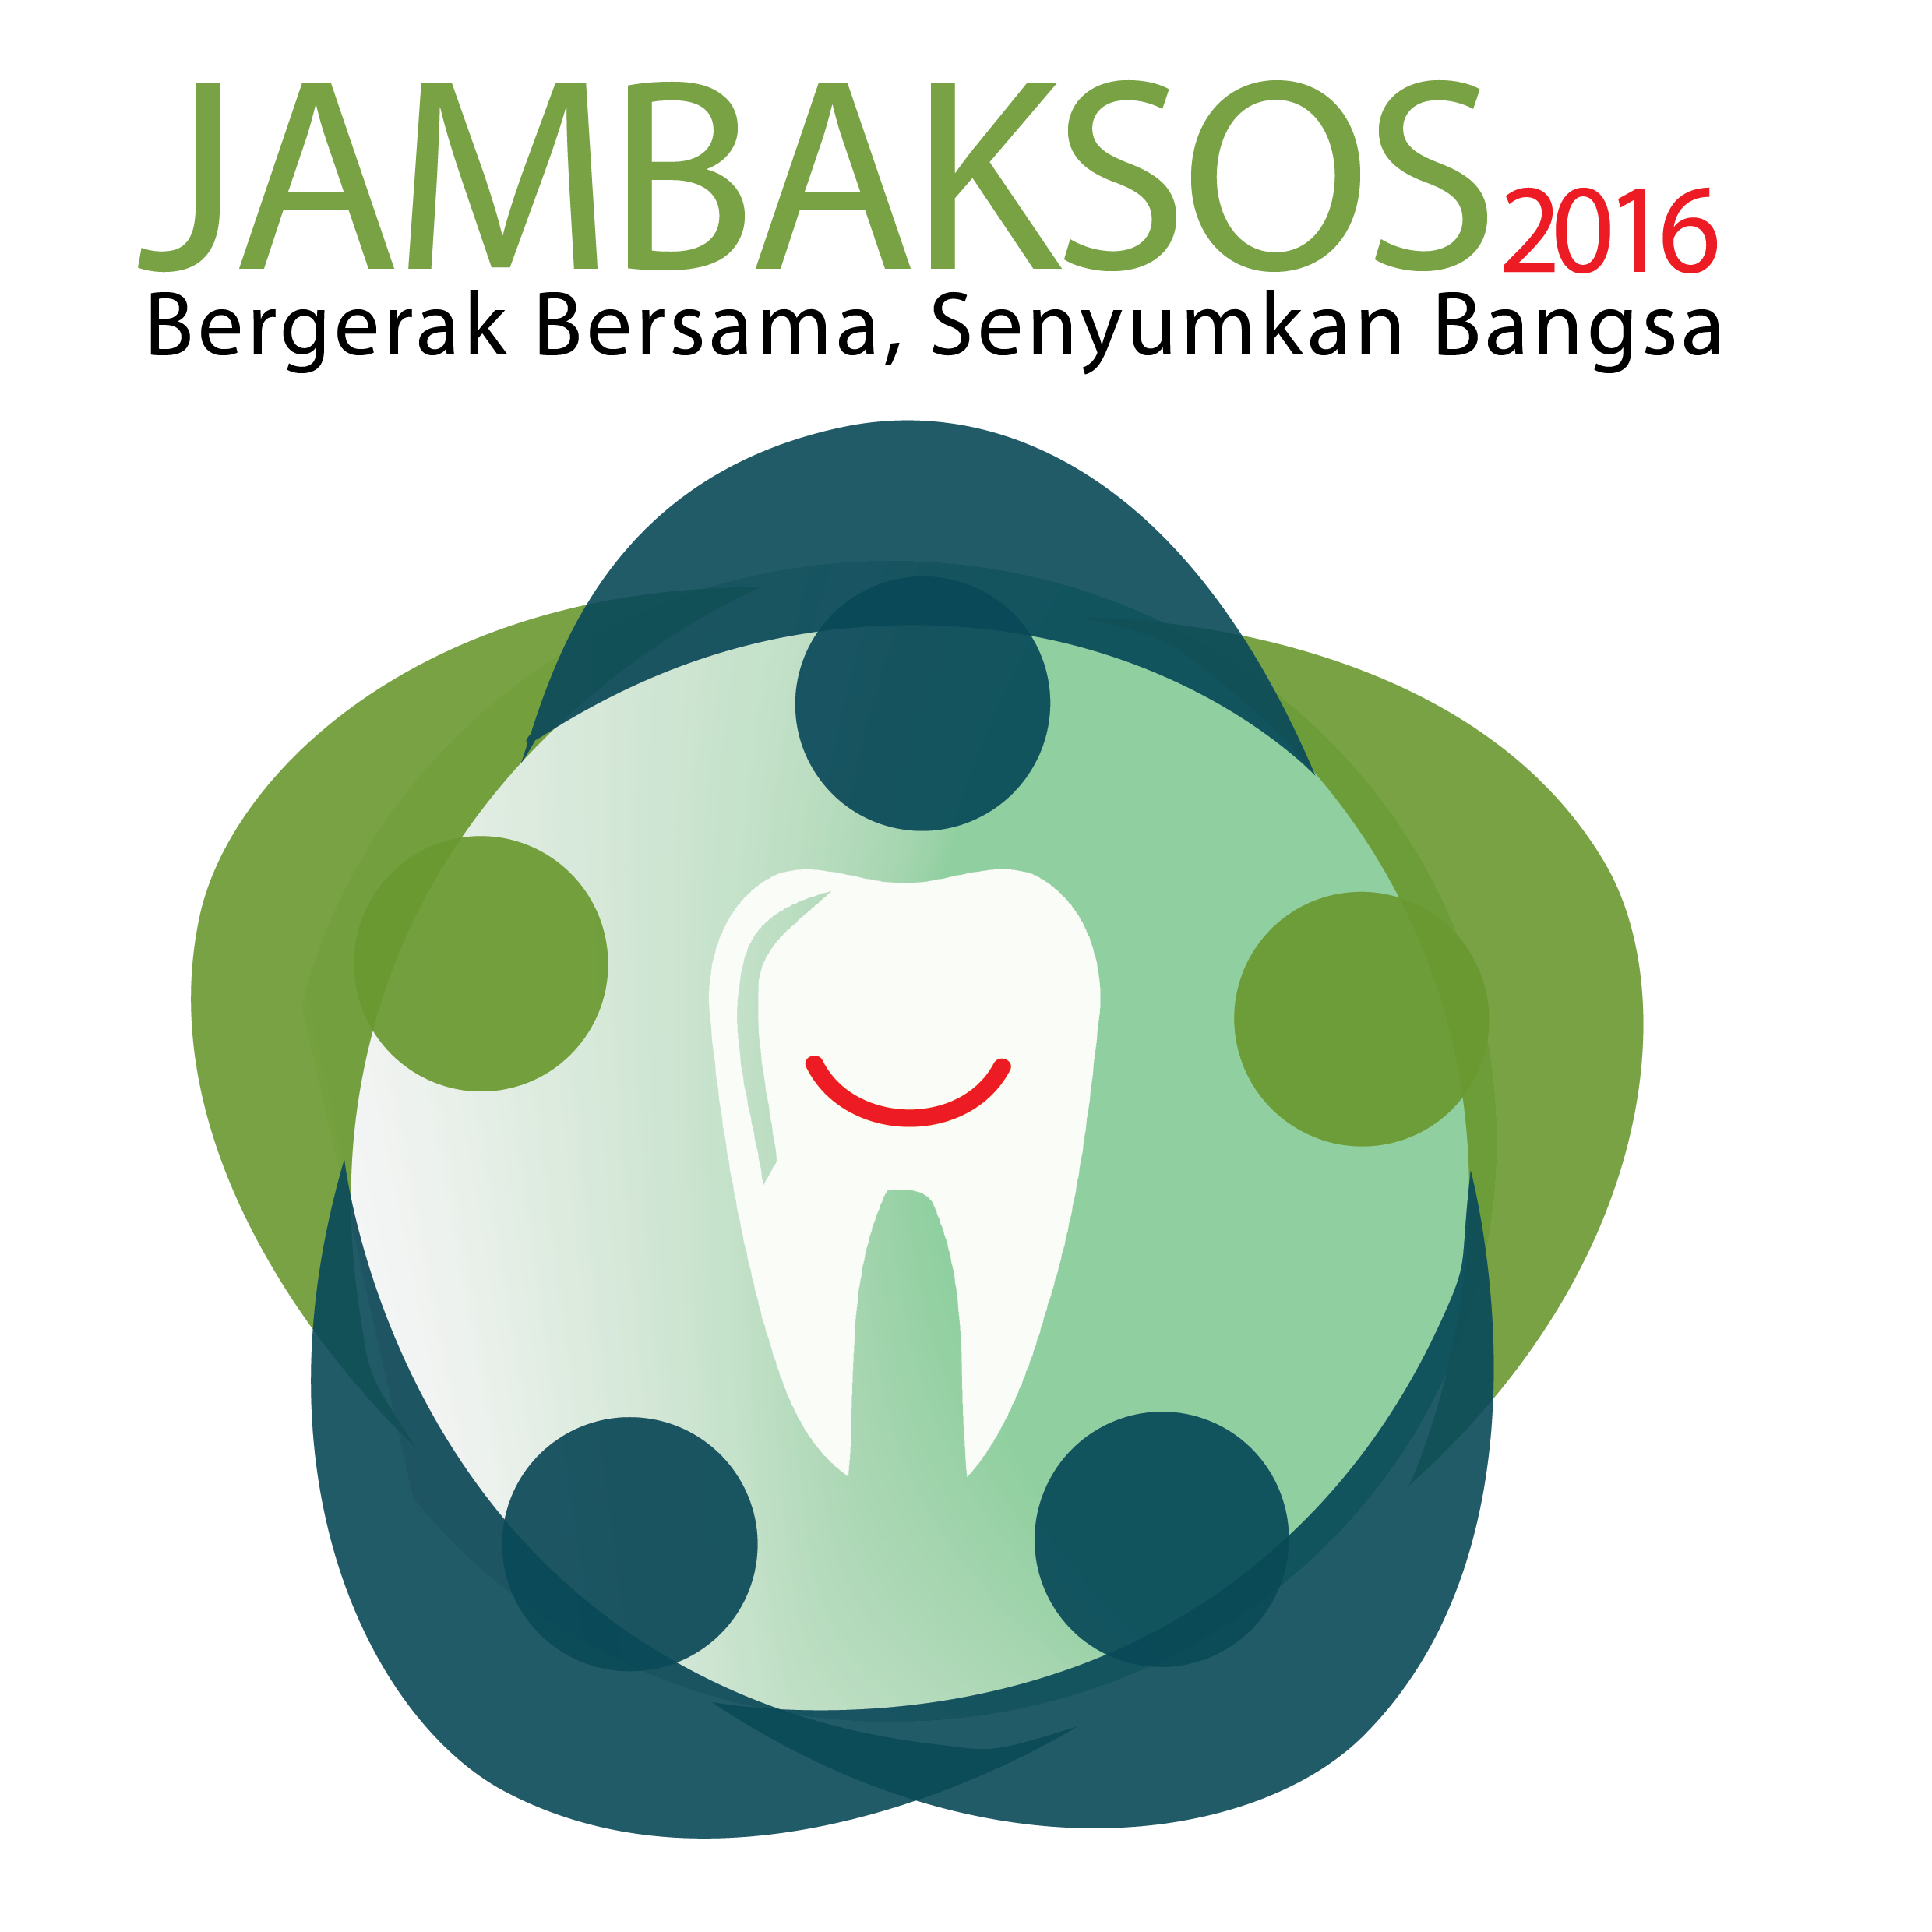 Jambaksos2016 gmail